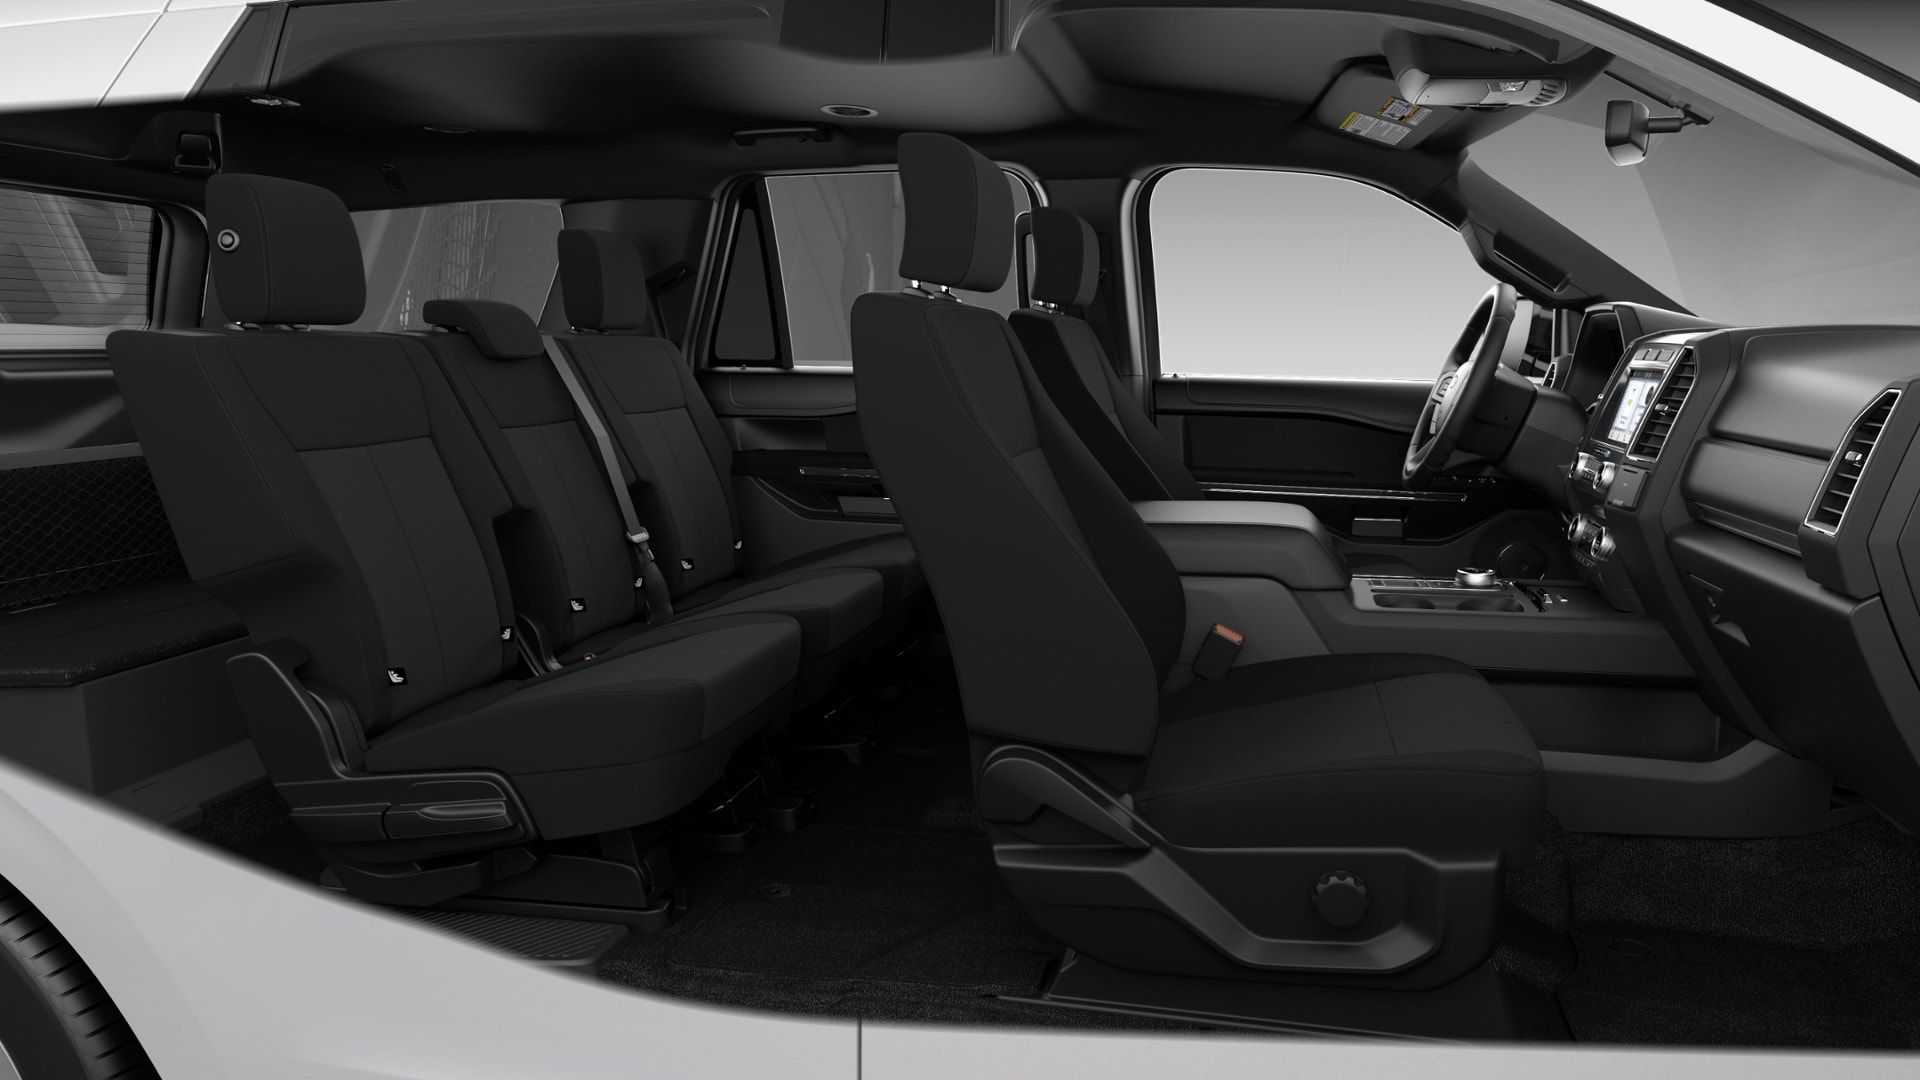 Ford Expedition 2021 có thêm phiên bản 2 hàng ghế, giá cực hấp dẫn 2021-ford-expedition-xl-stx-interior.jpg